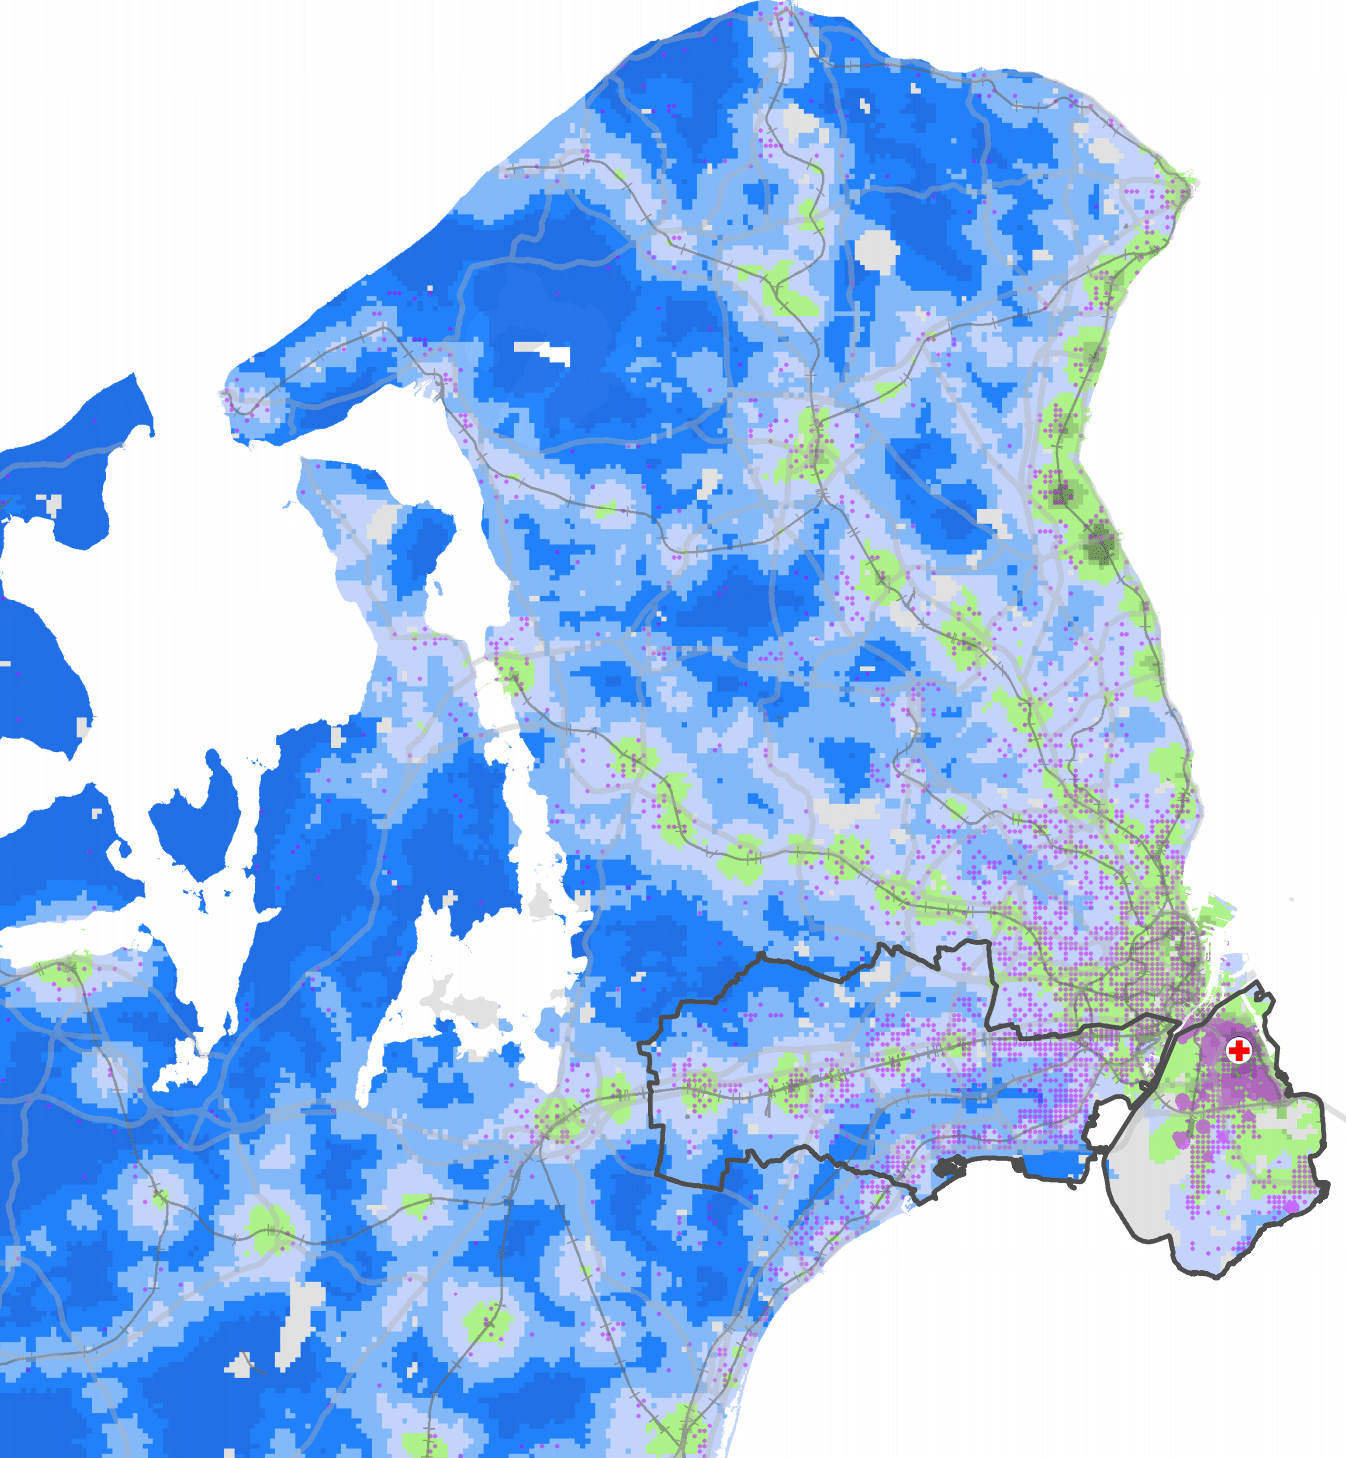 Mobilitetsanalyse for Region Hovedstaden